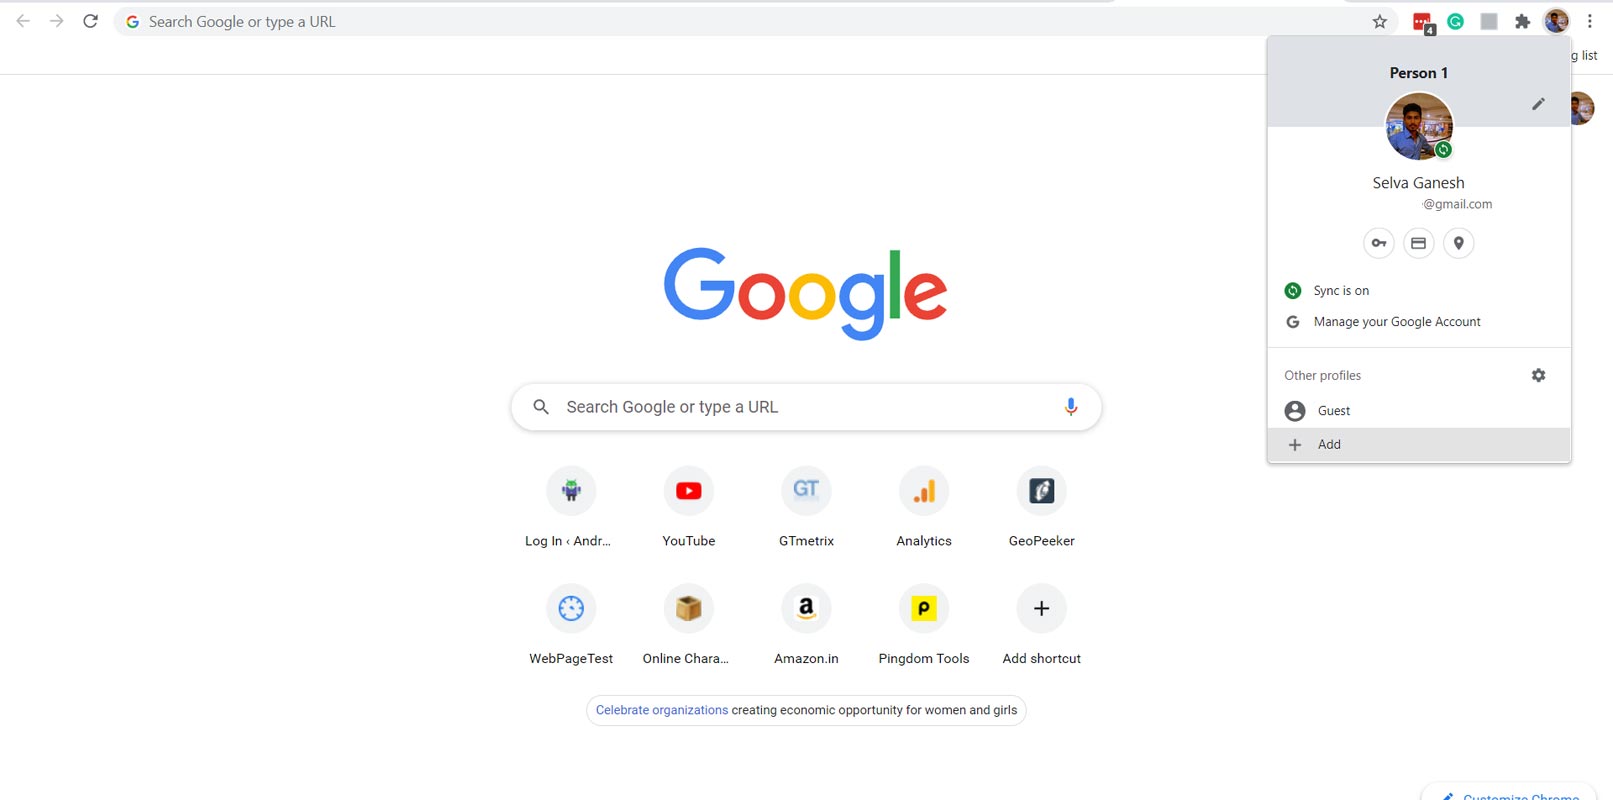 Add Profile in Google Chrome